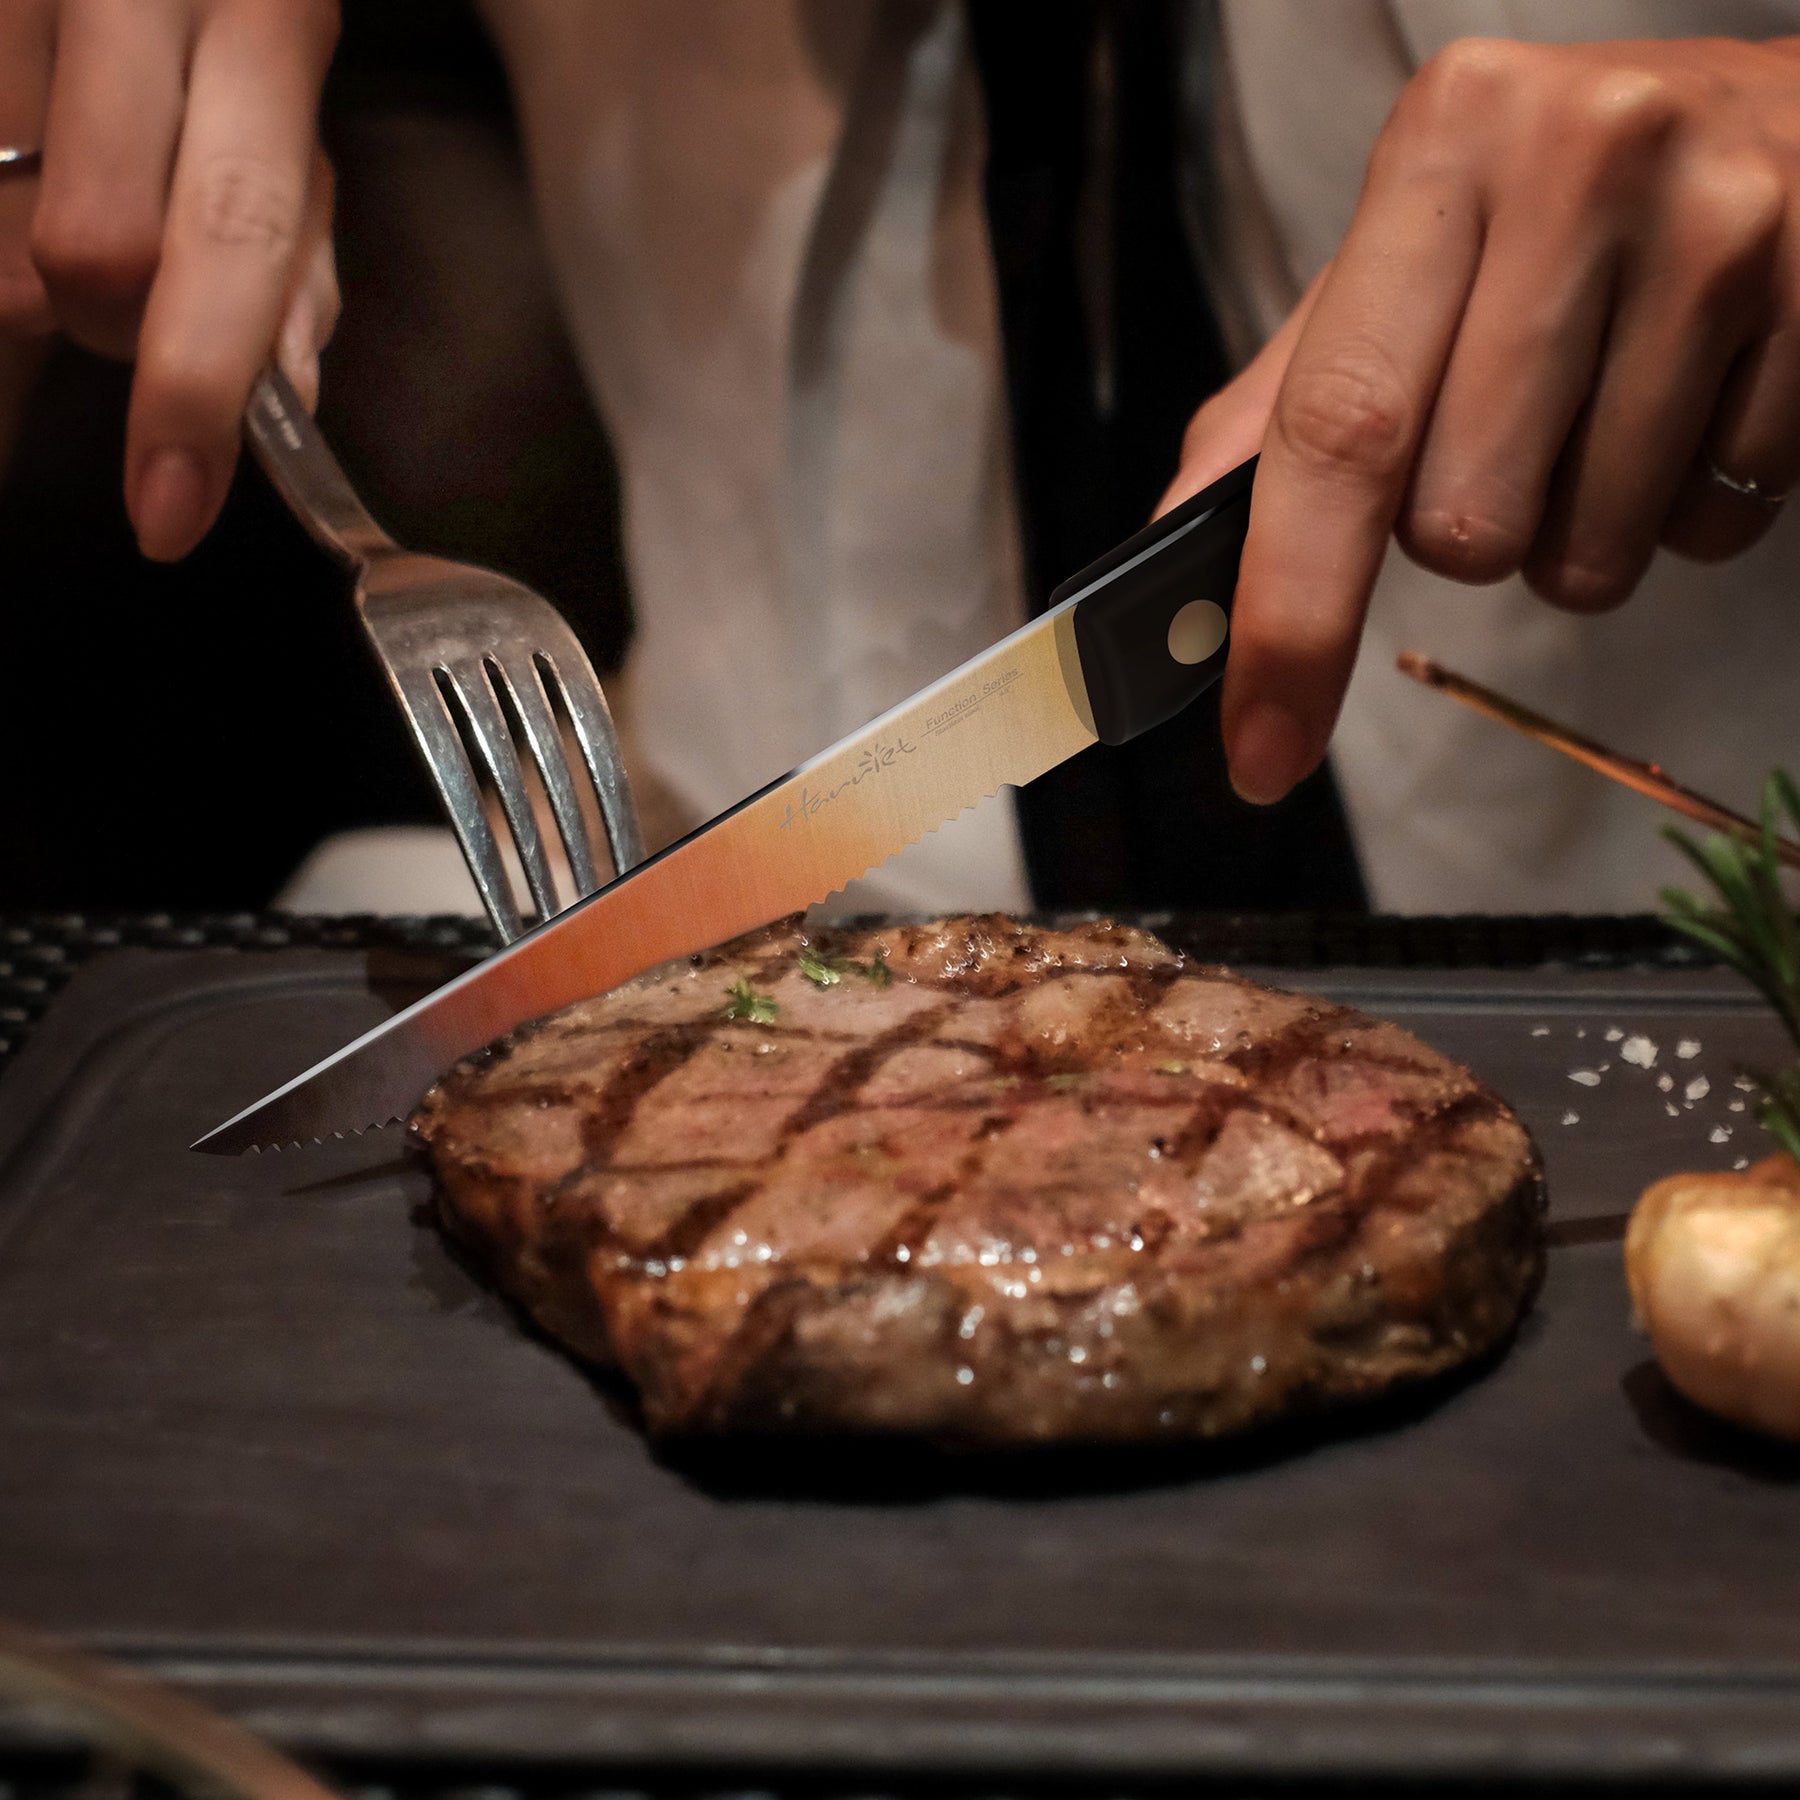 Harriet Steak Knife Set, Serrated Steak Knives Set of 6, Full Tang German Stainless Steel Steak Knives, White| Ltmate